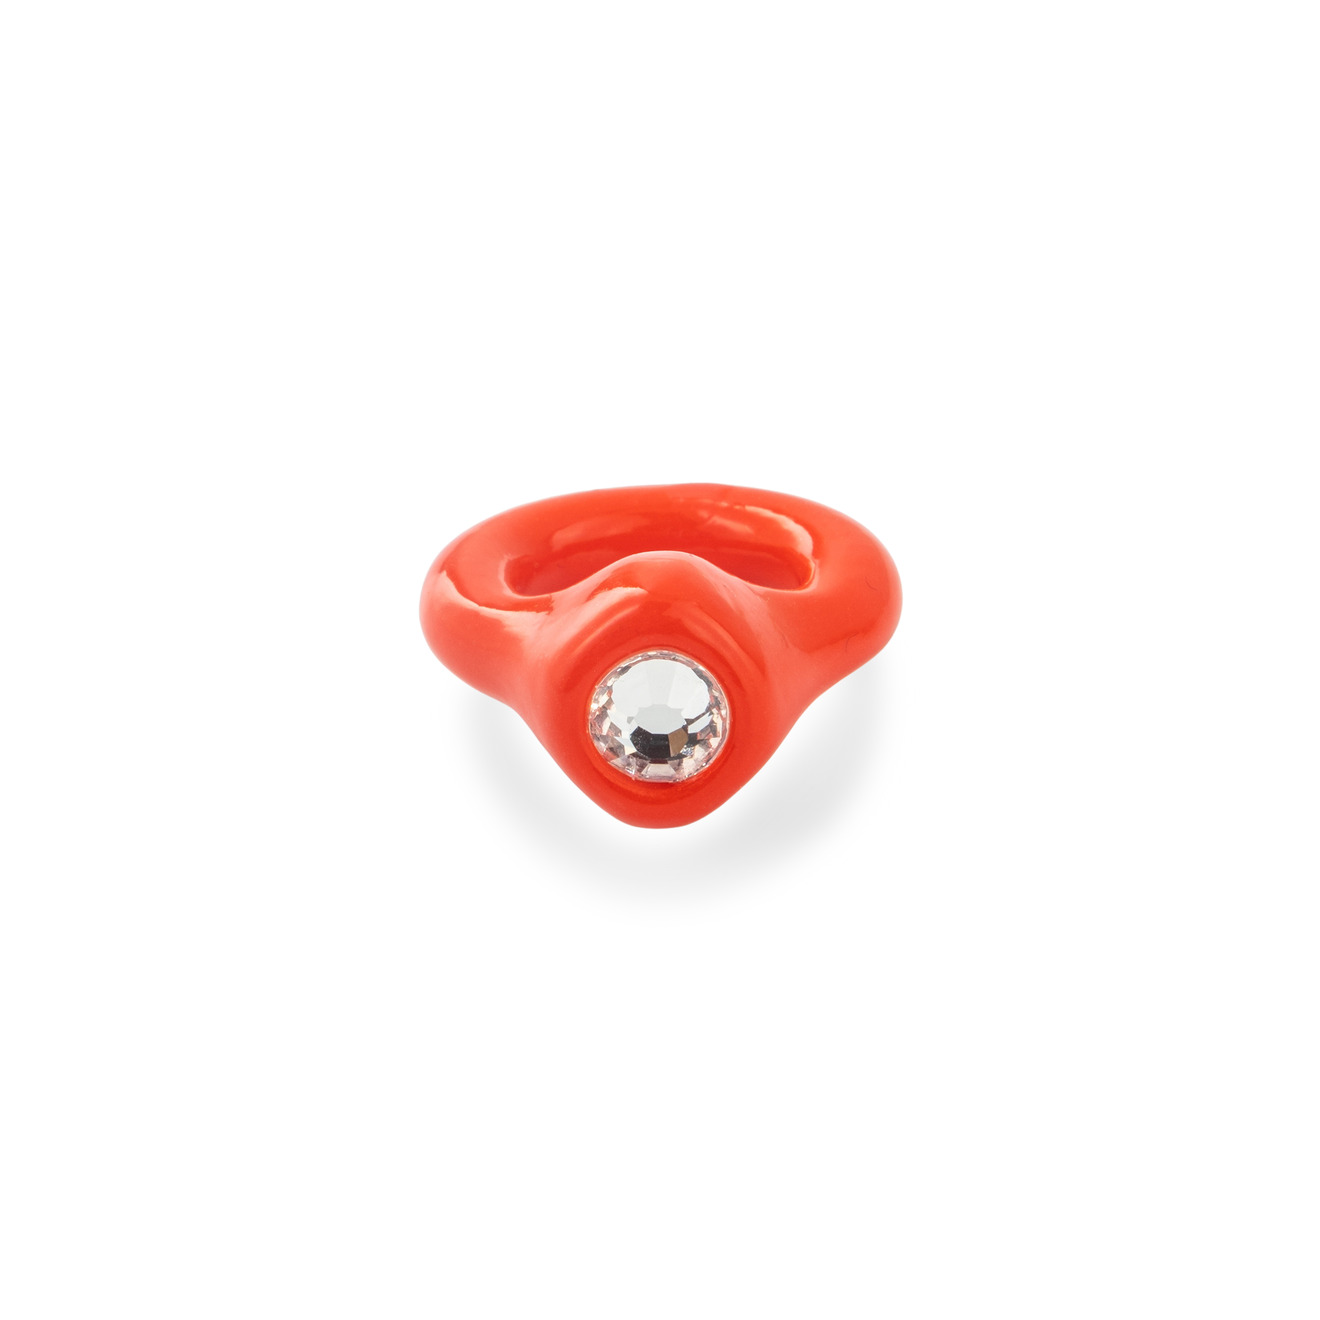 de.formee Красное кольцо из полимерной глины с прозрачным стразом 28367